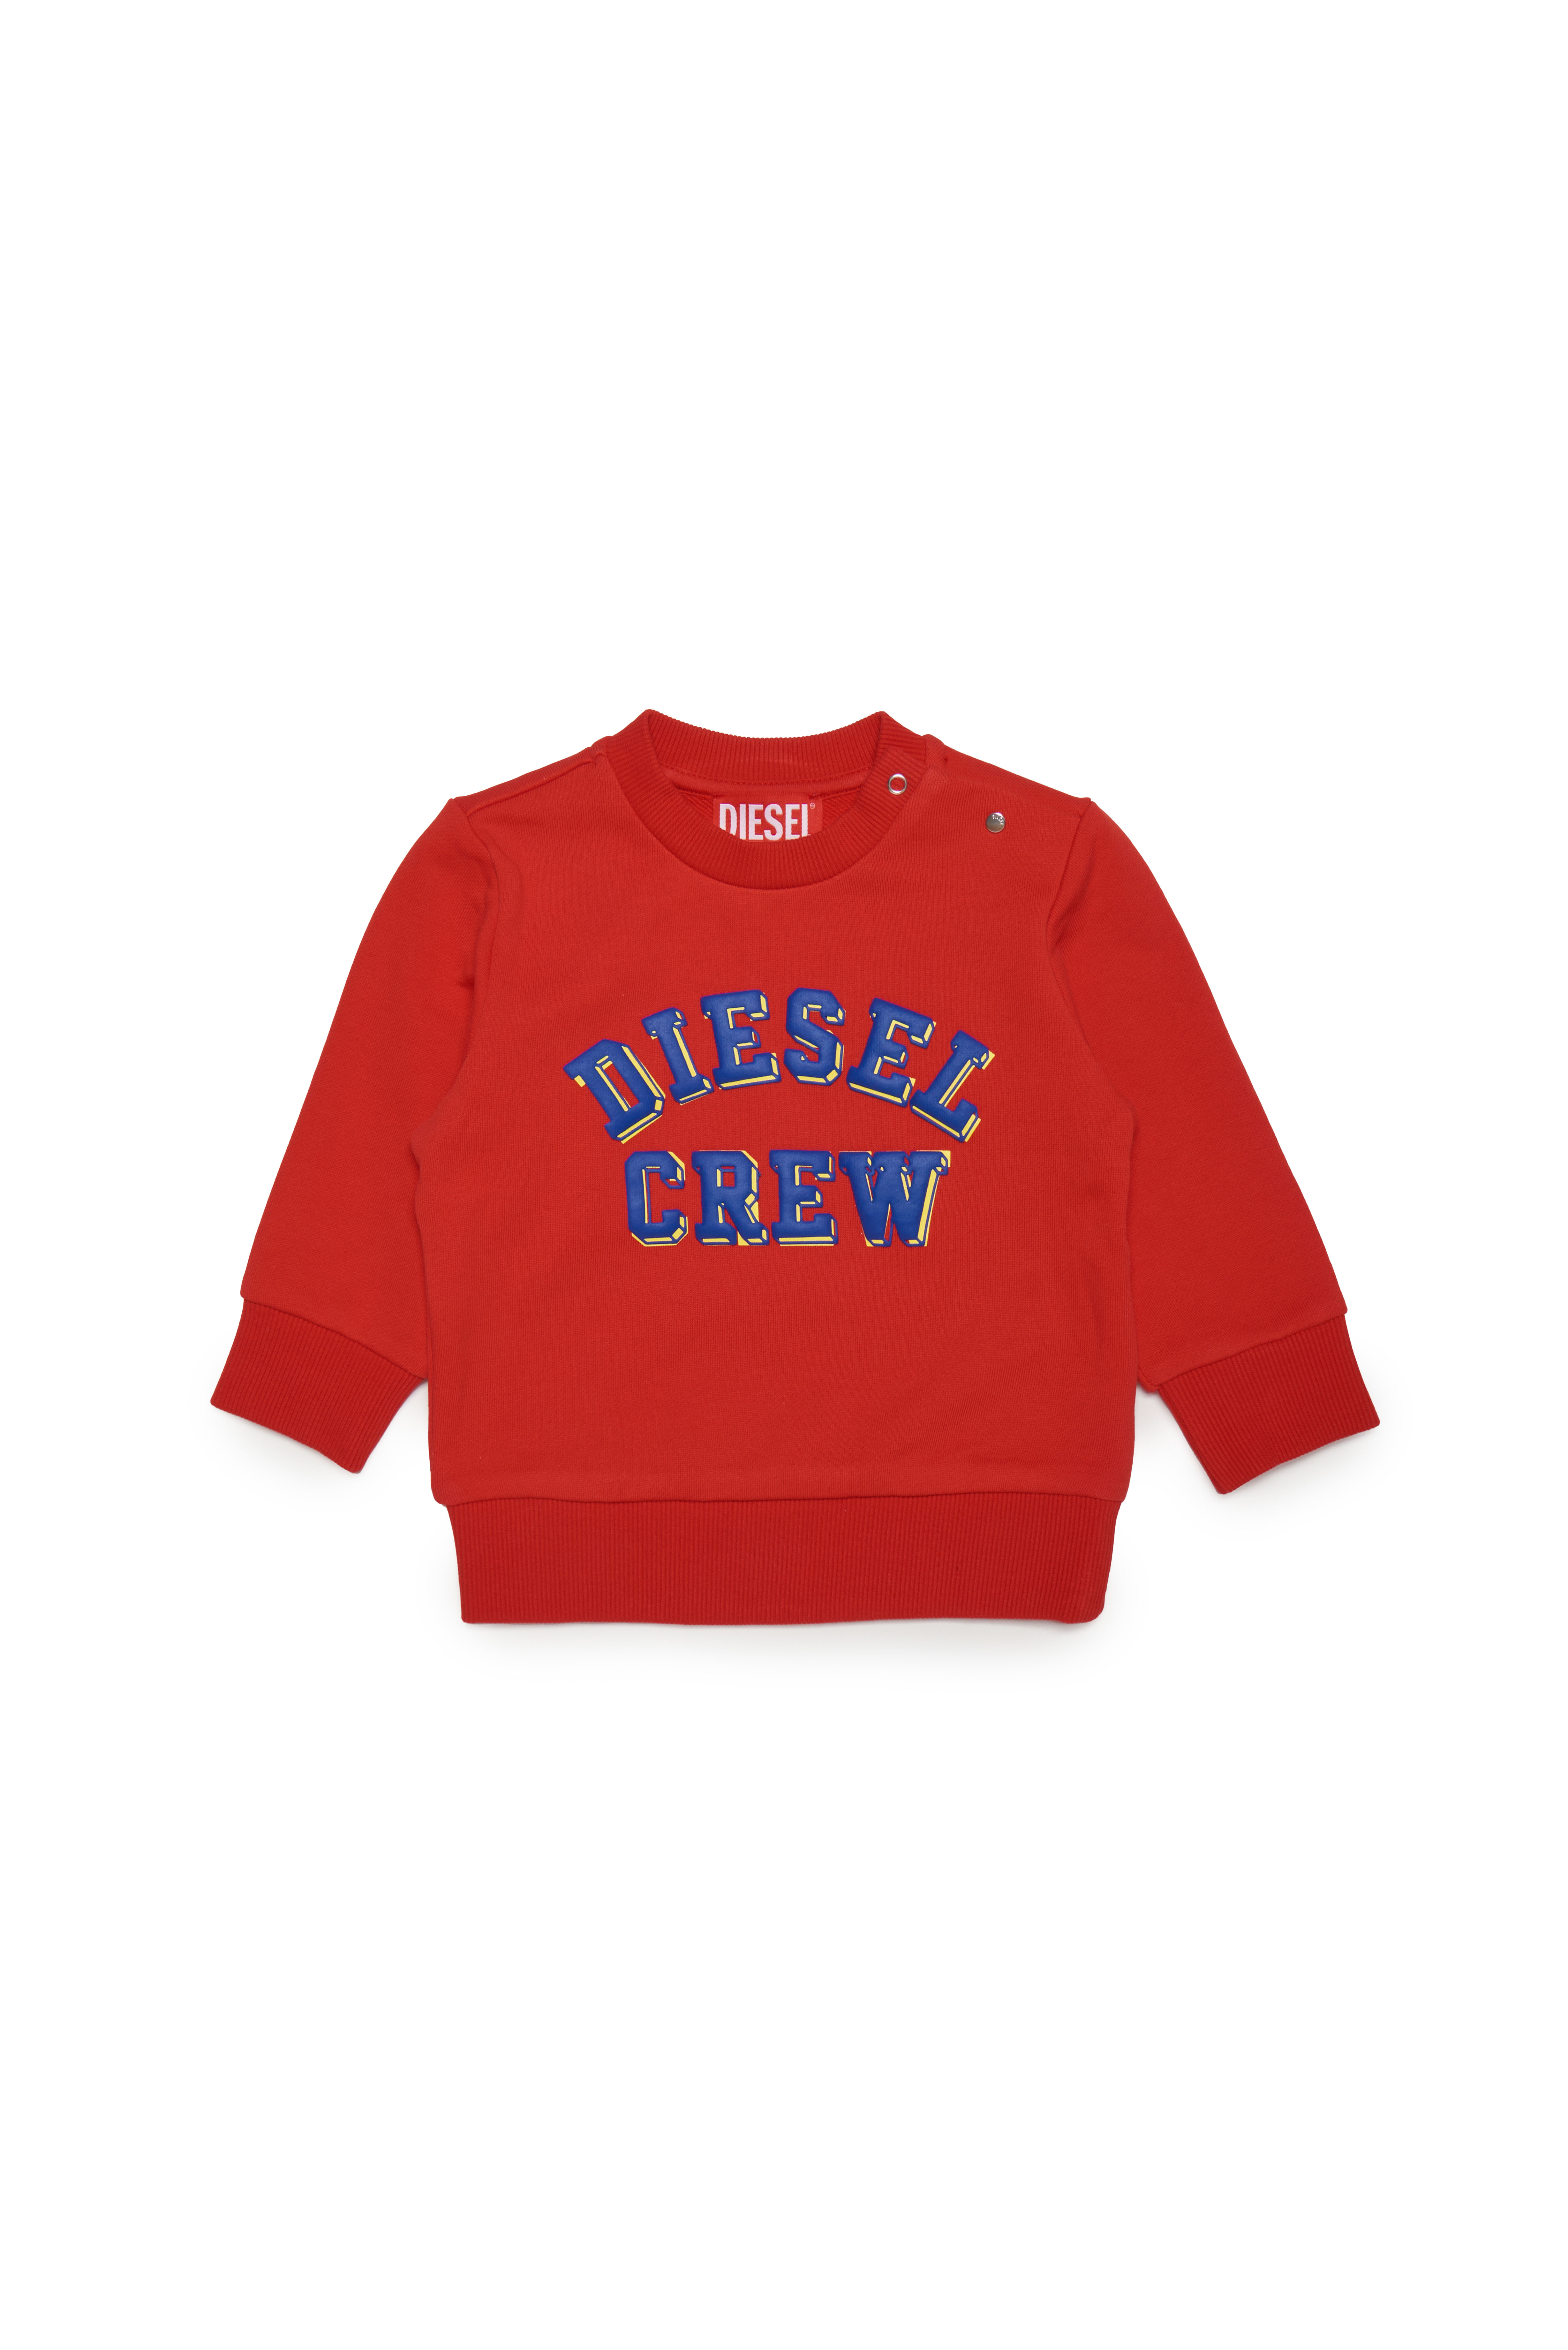 Diesel - Sweatshirt aus Baumwolle mit Diesel Crew-Logo - Sweatshirts - Herren - Rot